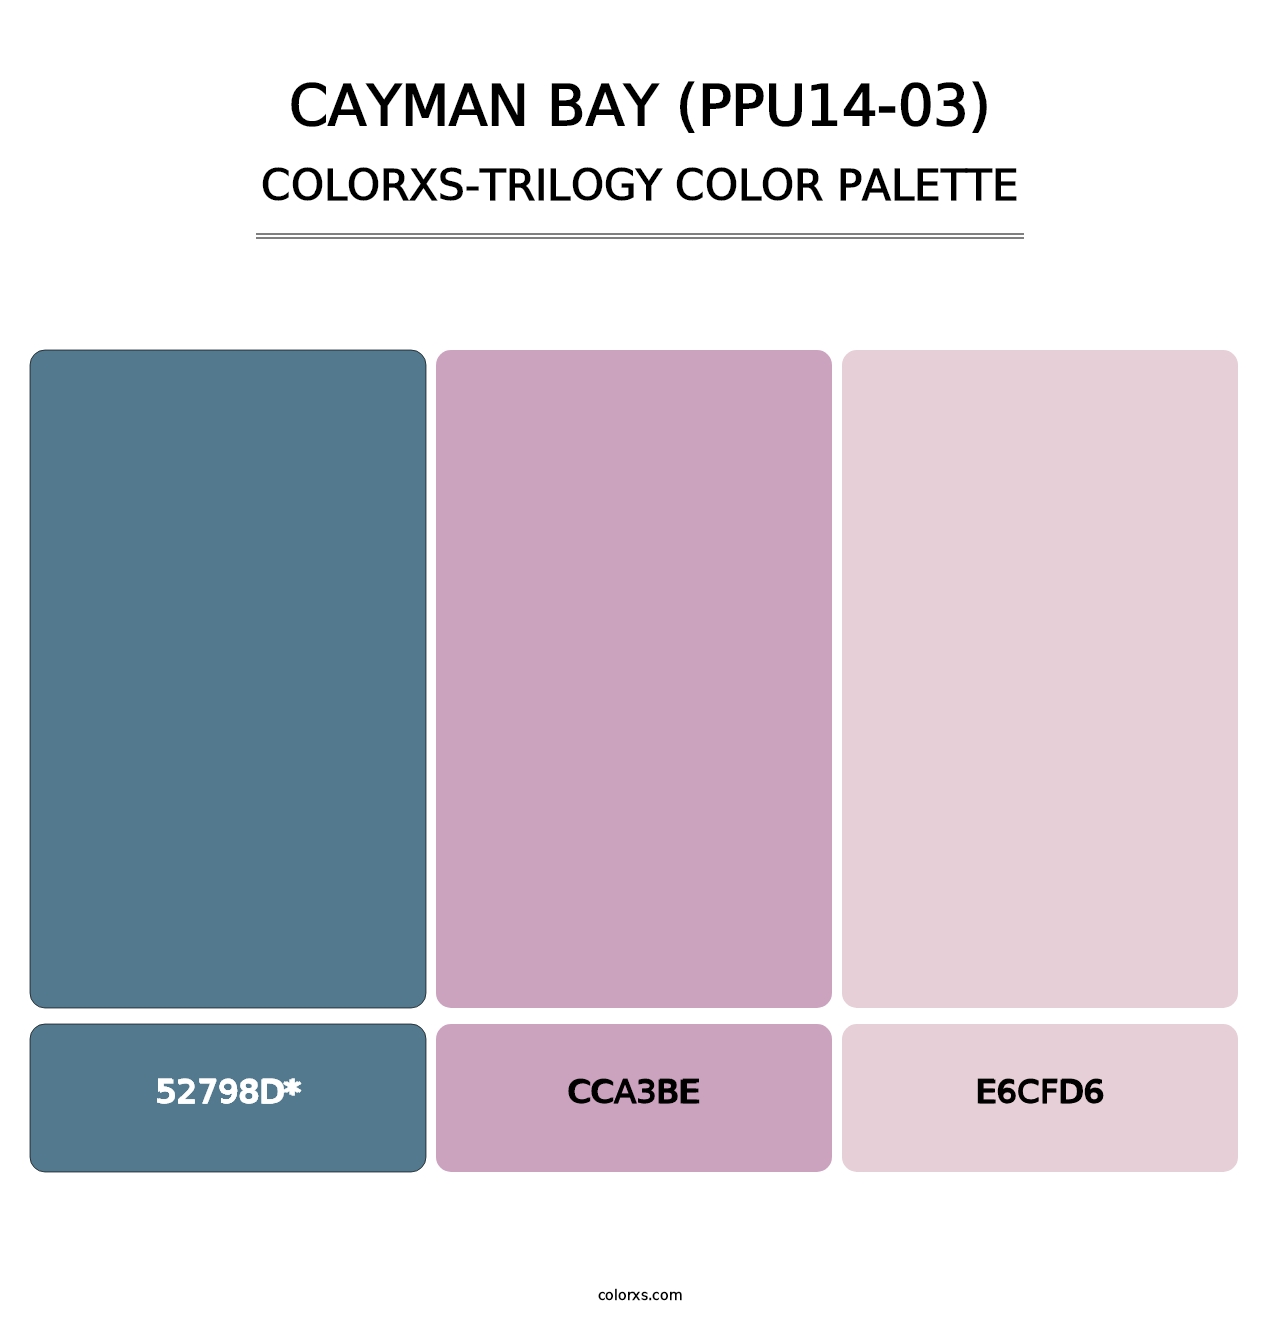 Cayman Bay (PPU14-03) - Colorxs Trilogy Palette